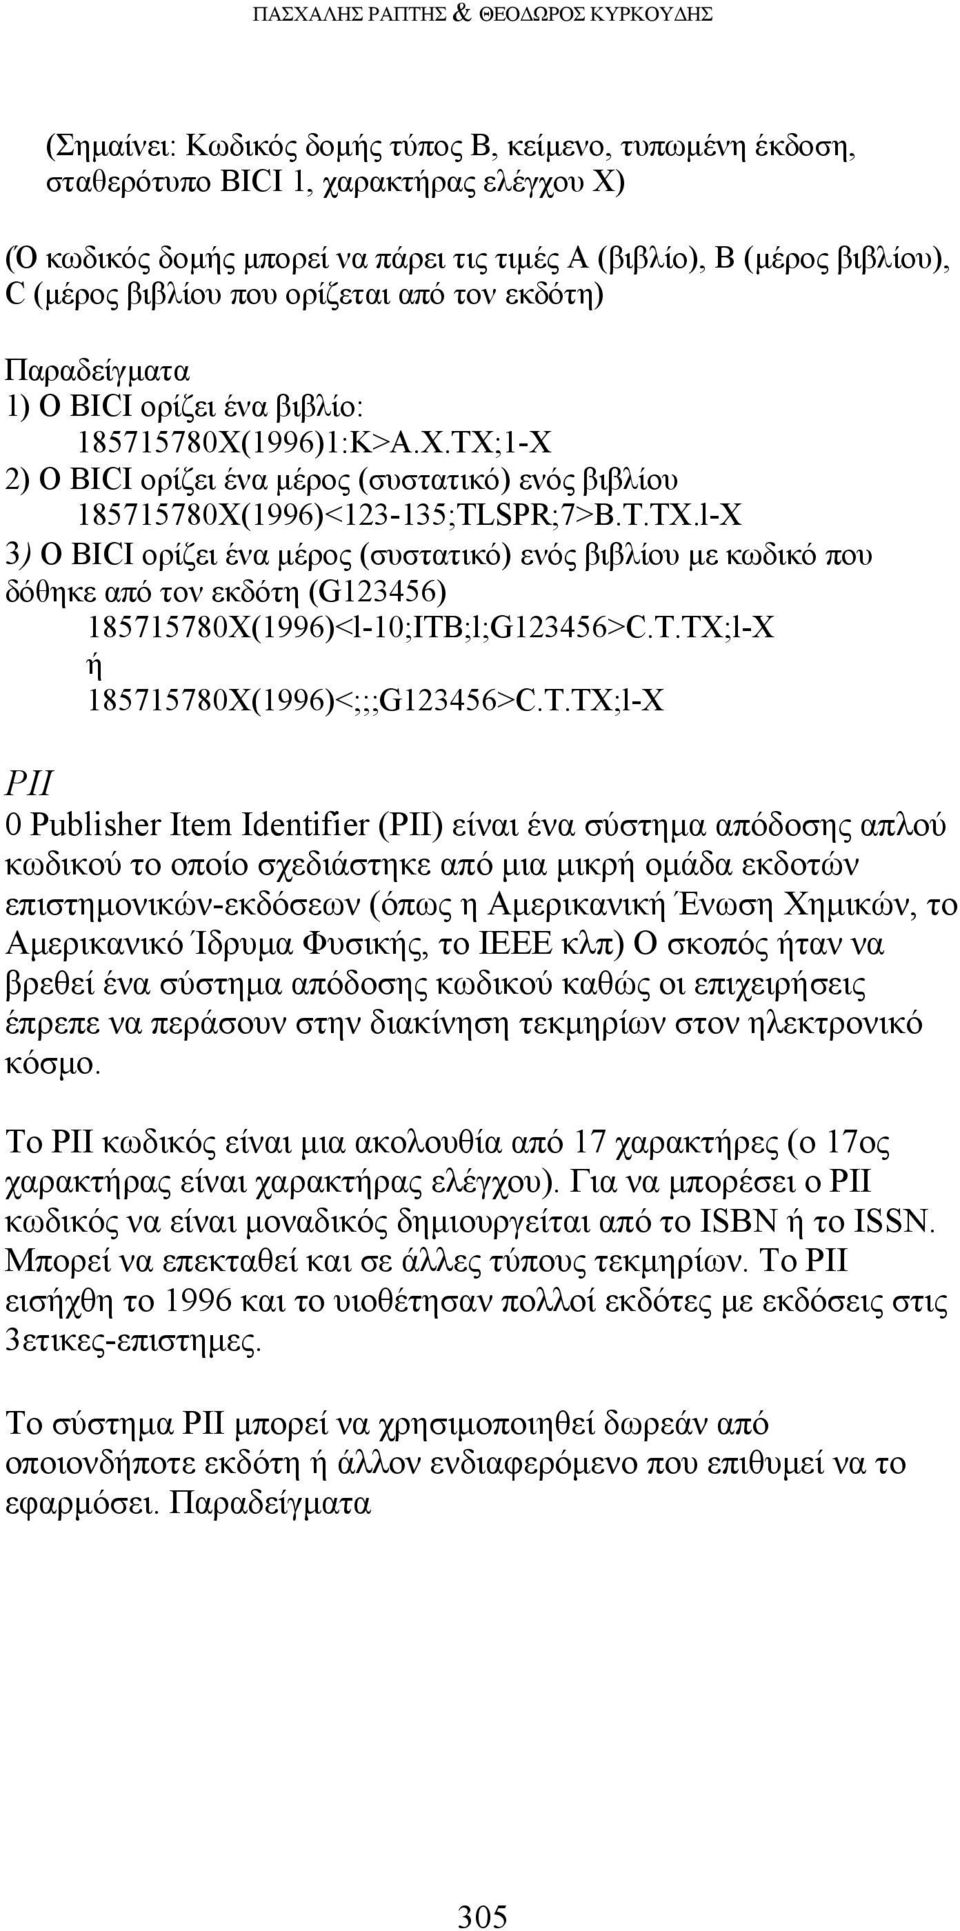 1996)1:Κ>Α.Χ.ΤΧ;1-Χ 2) Ο BICI ορίζει ένα μέρος (συστατικό) ενός βιβλίου 185715780X(1996)<123-135;TLSPR;7>B.T.TX.